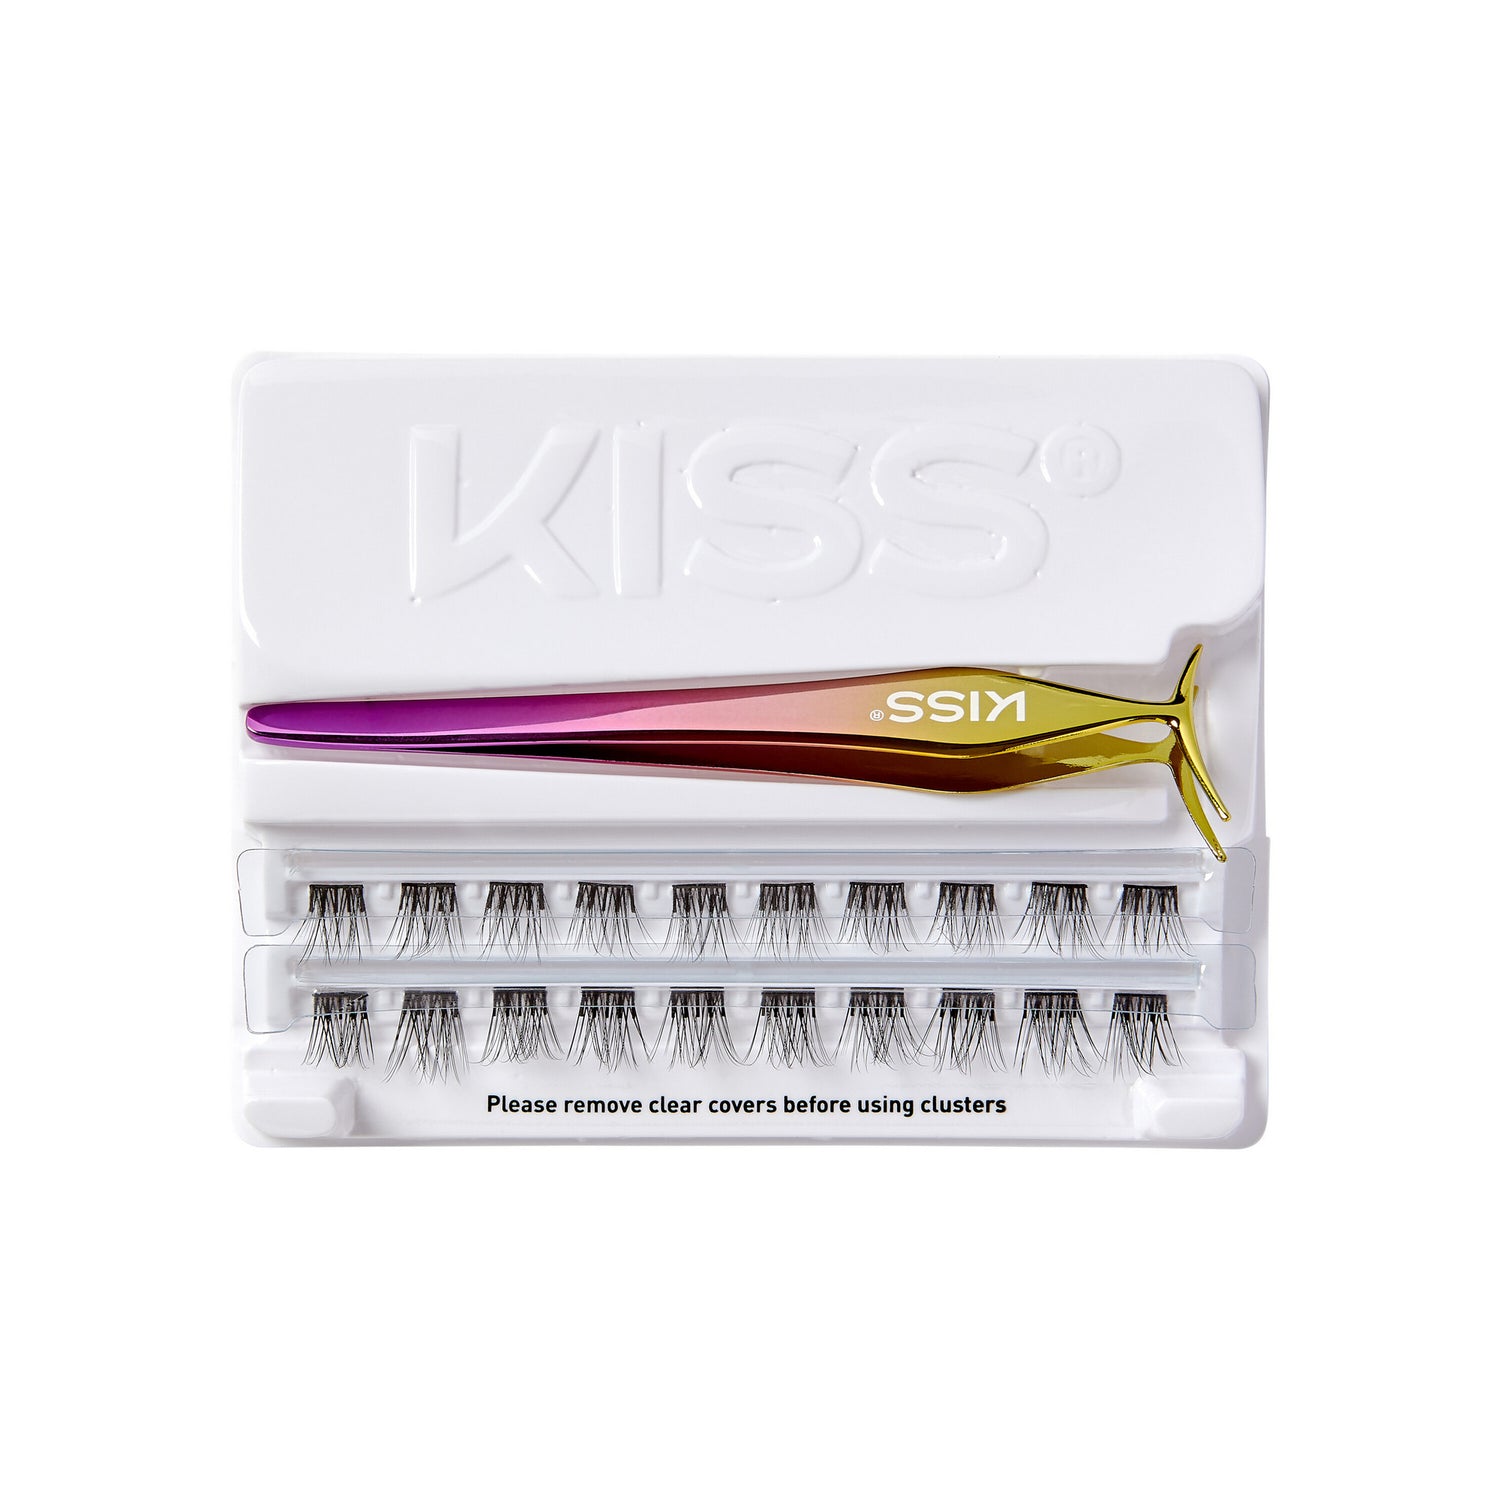 KISS IMPRESS PRESS ON FALSIES KIT 01 Open Box